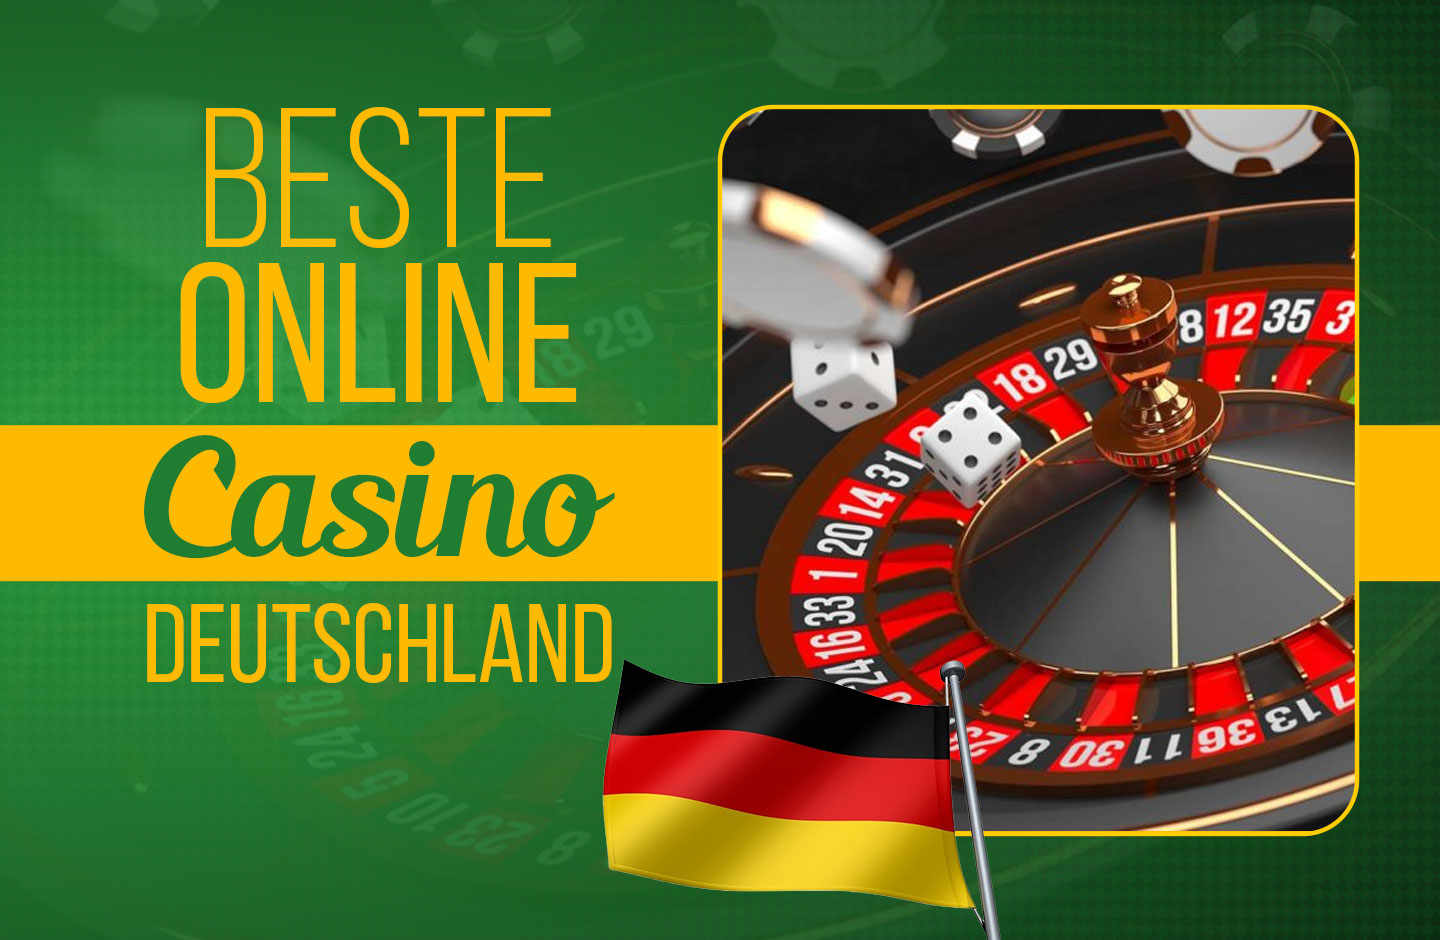 Online-Casinos Spiele - Es endet nie, es sei denn...